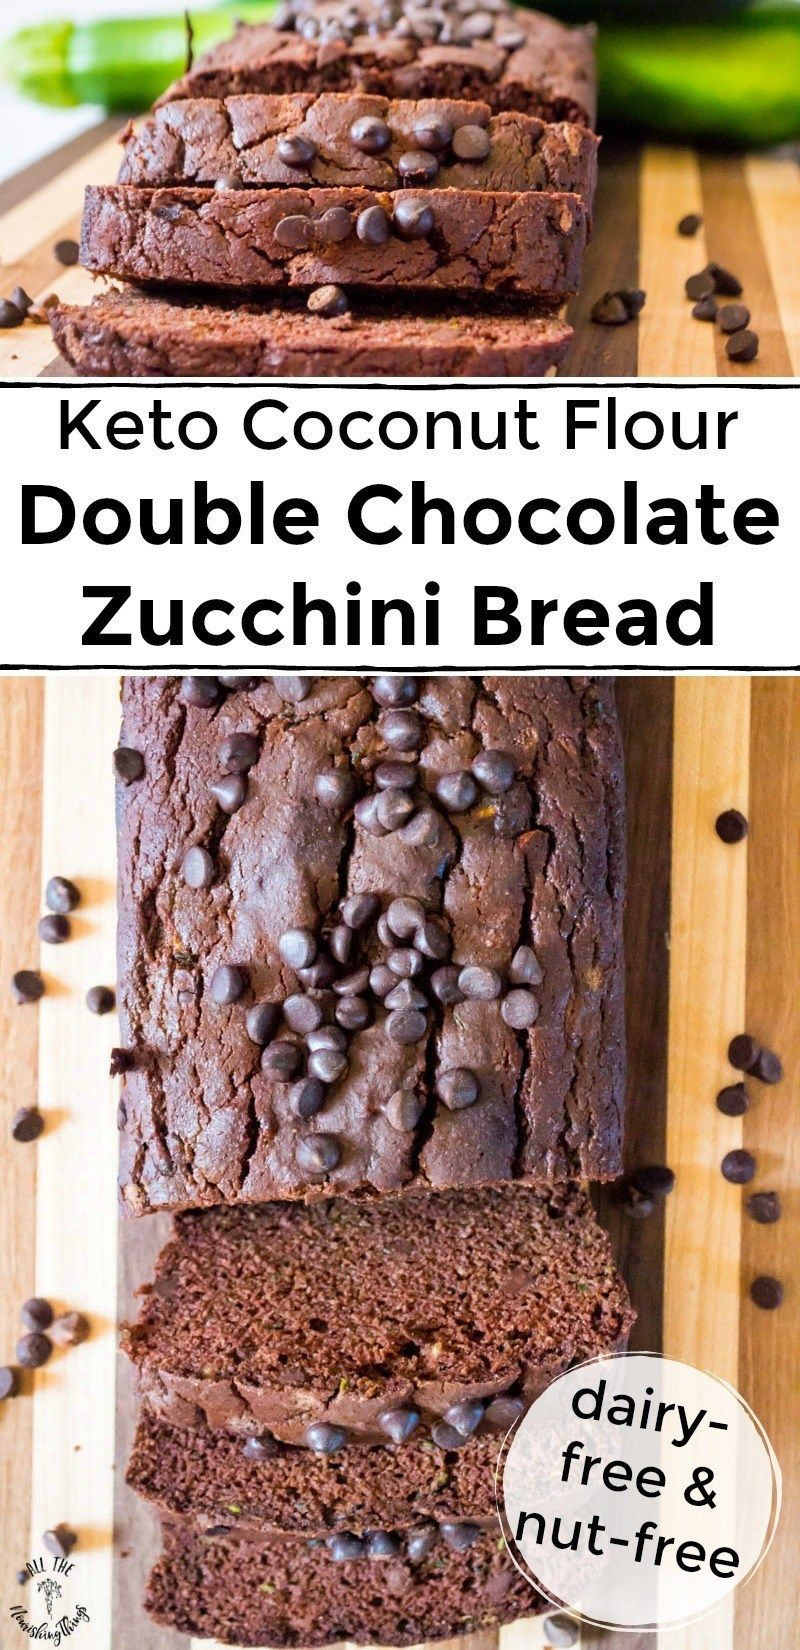 Keto Zucchini Bread Coconut Flour
 Keto Coconut Flour Double Chocolate Zucchini Bread